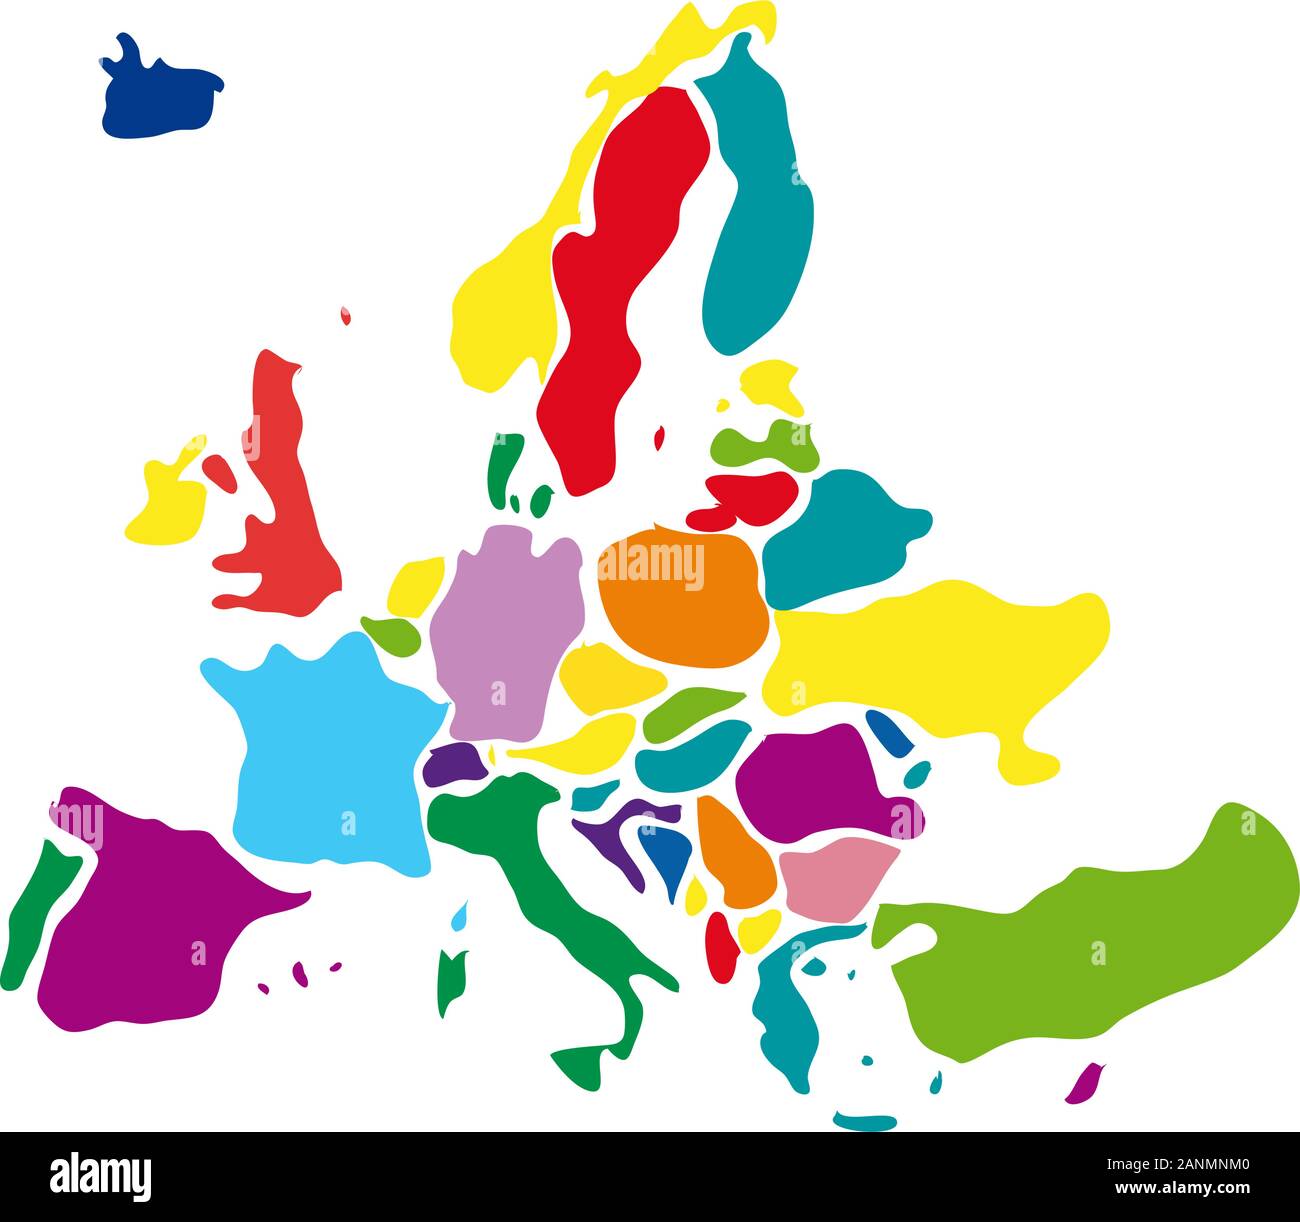 Resumen de dibujo vectorial mapa de Europa Ilustración del Vector